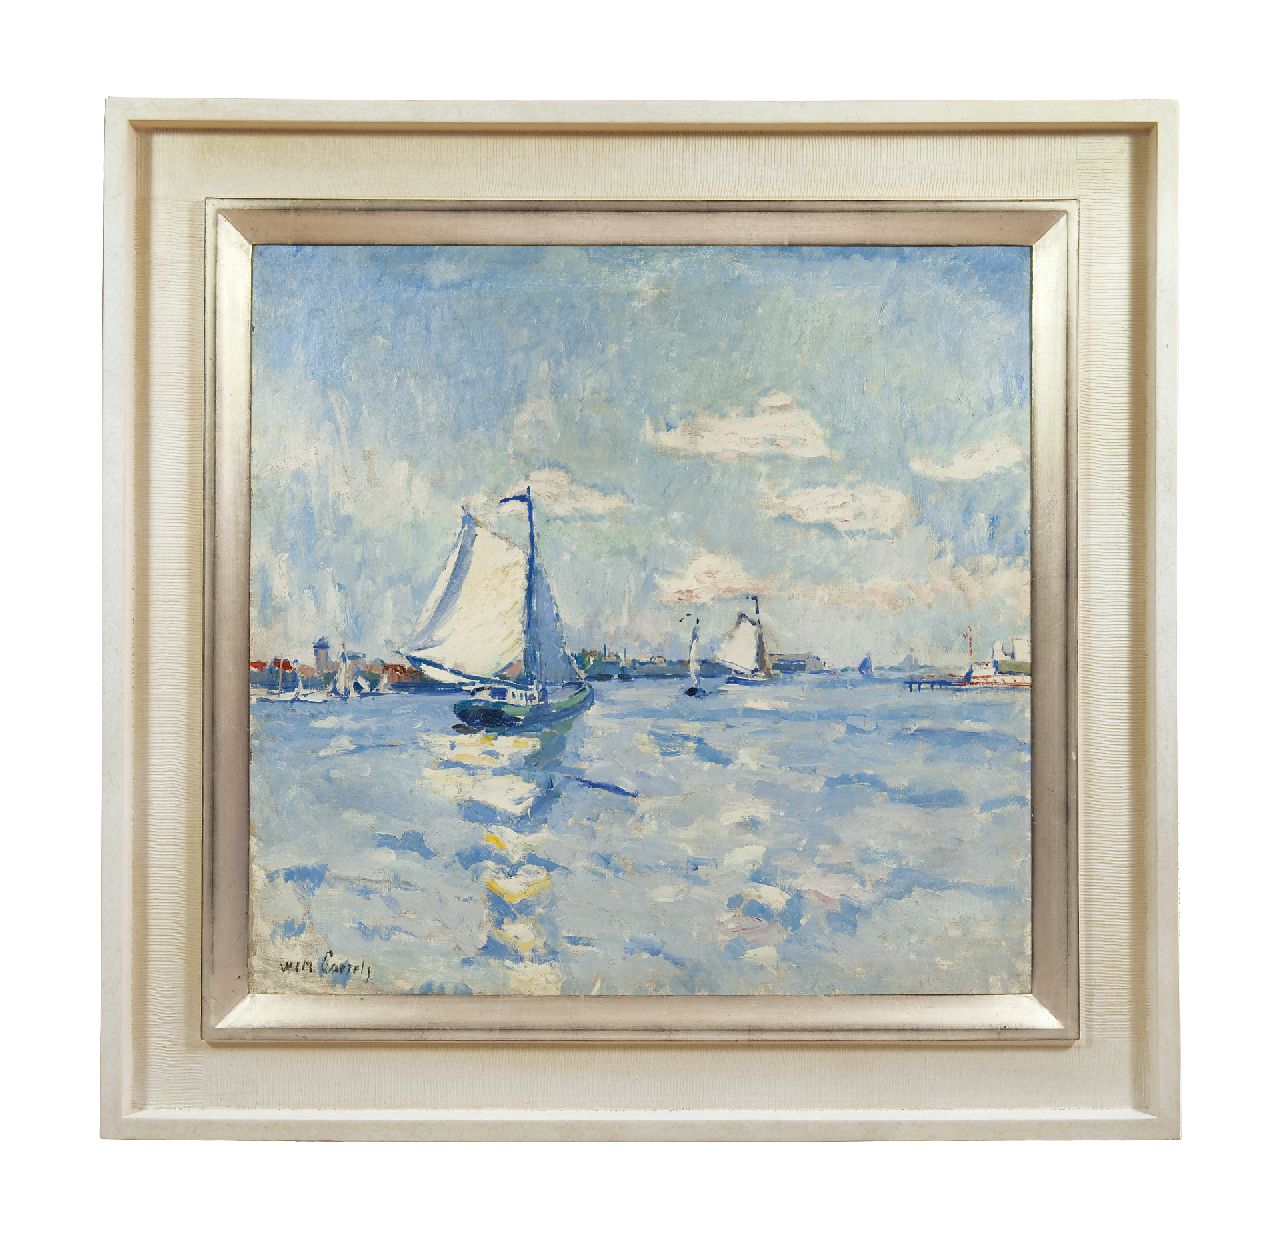 Paerels W.A.  | 'Willem' Adriaan Paerels, Segelboote auf einem Fluss, Öl auf Leinwand 71,3 x 74,3 cm, Unterzeichnet l.u. und vermutlich zu datieren um 1915